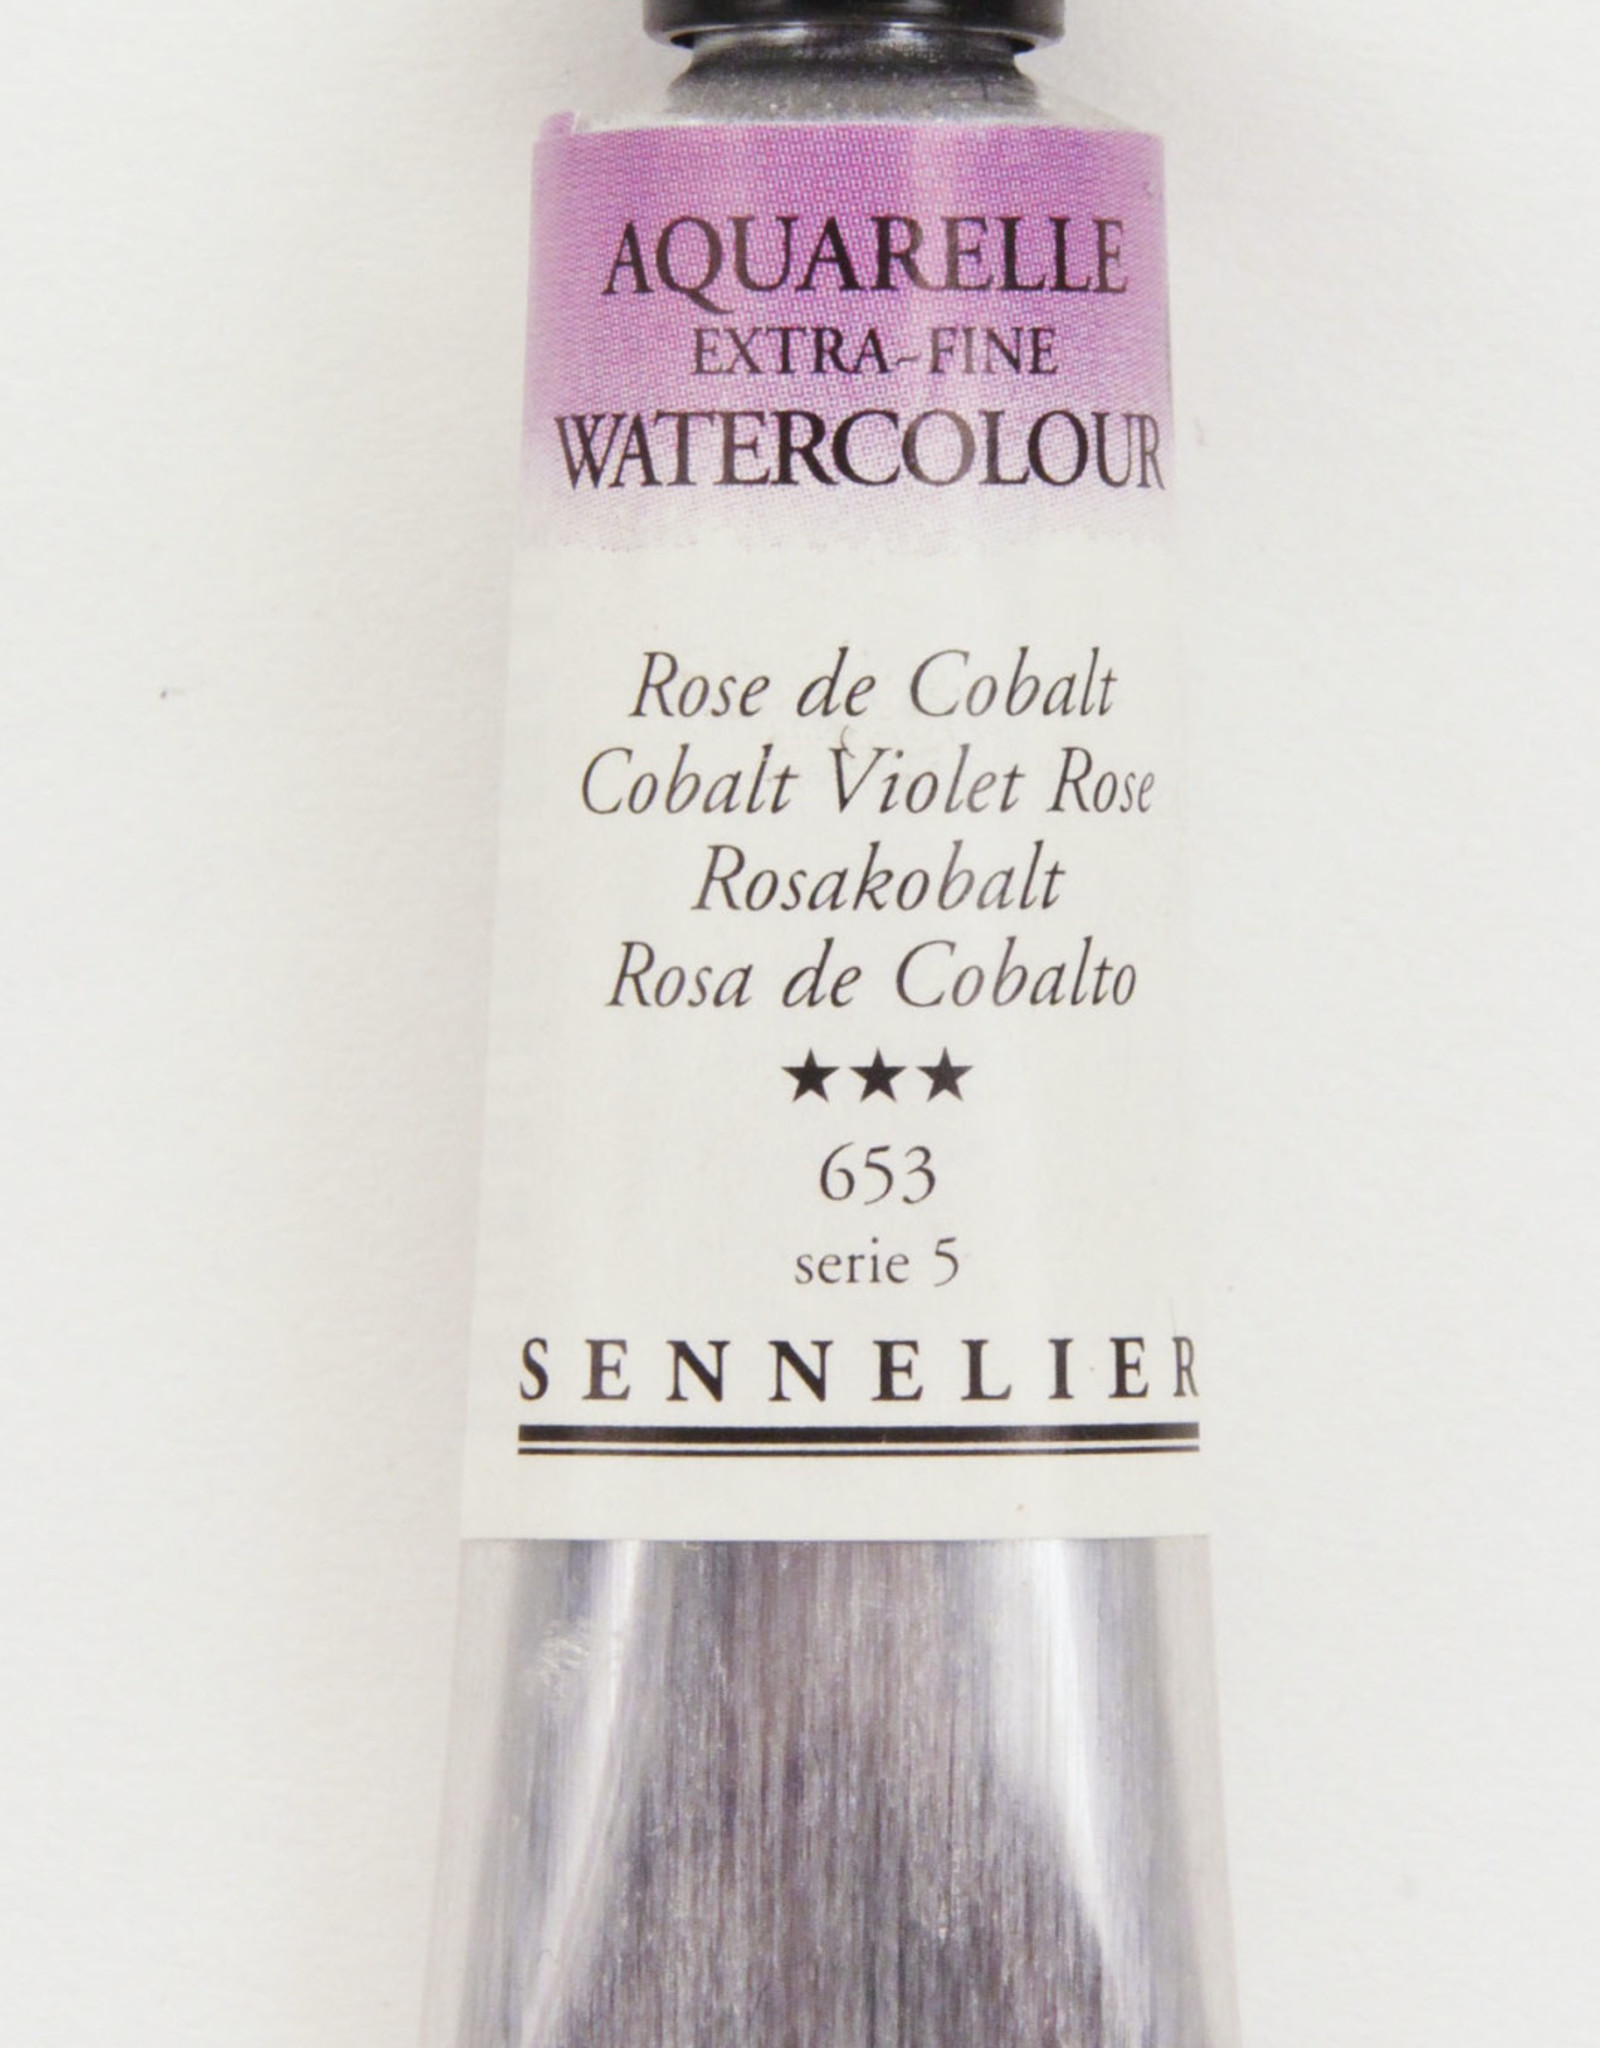 Sennelier, Aquarelle Watercolor Paint, Cobalt Violet Rose, 653, 10ml, Series 5